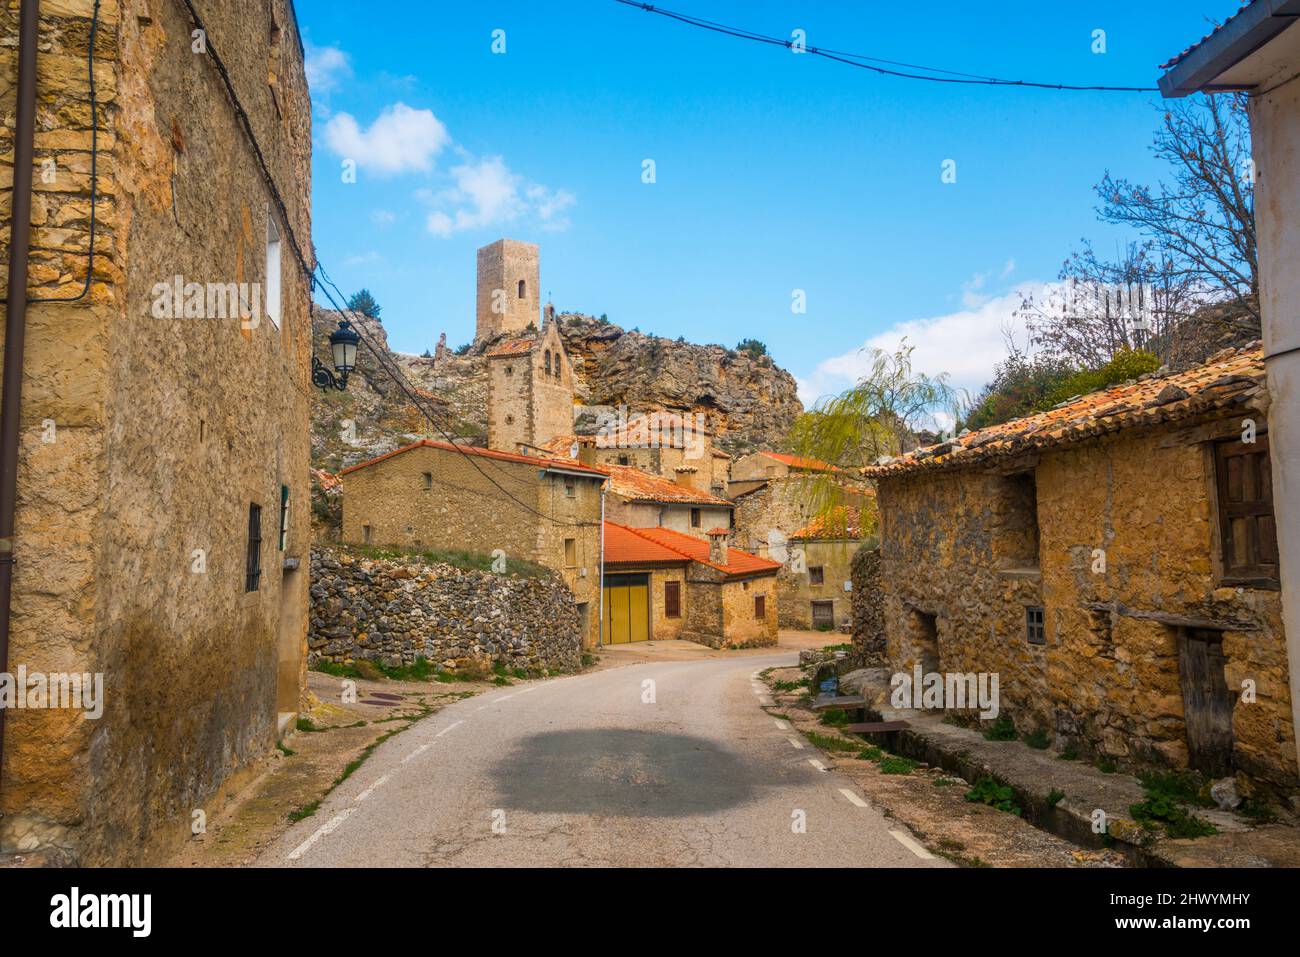 Street and village. Chaorna, Soria province, Castilla Leon, Spain. Stock Photo